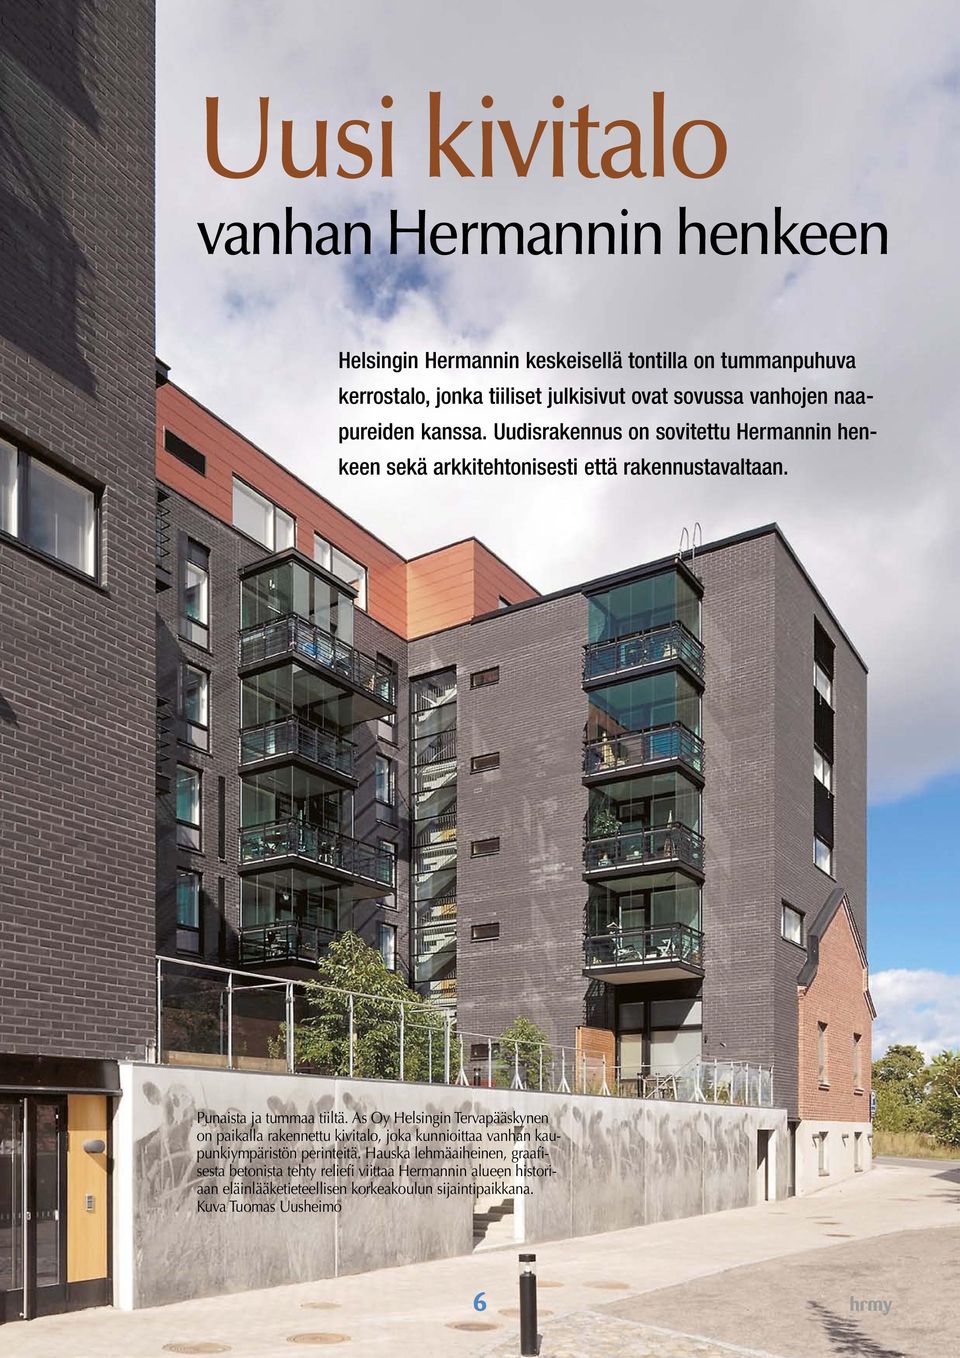 As Oy Helsingin Tervapääskynen on paikalla rakennettu kivitalo, joka kunnioittaa vanhan kaupunkiympäristön perinteitä.